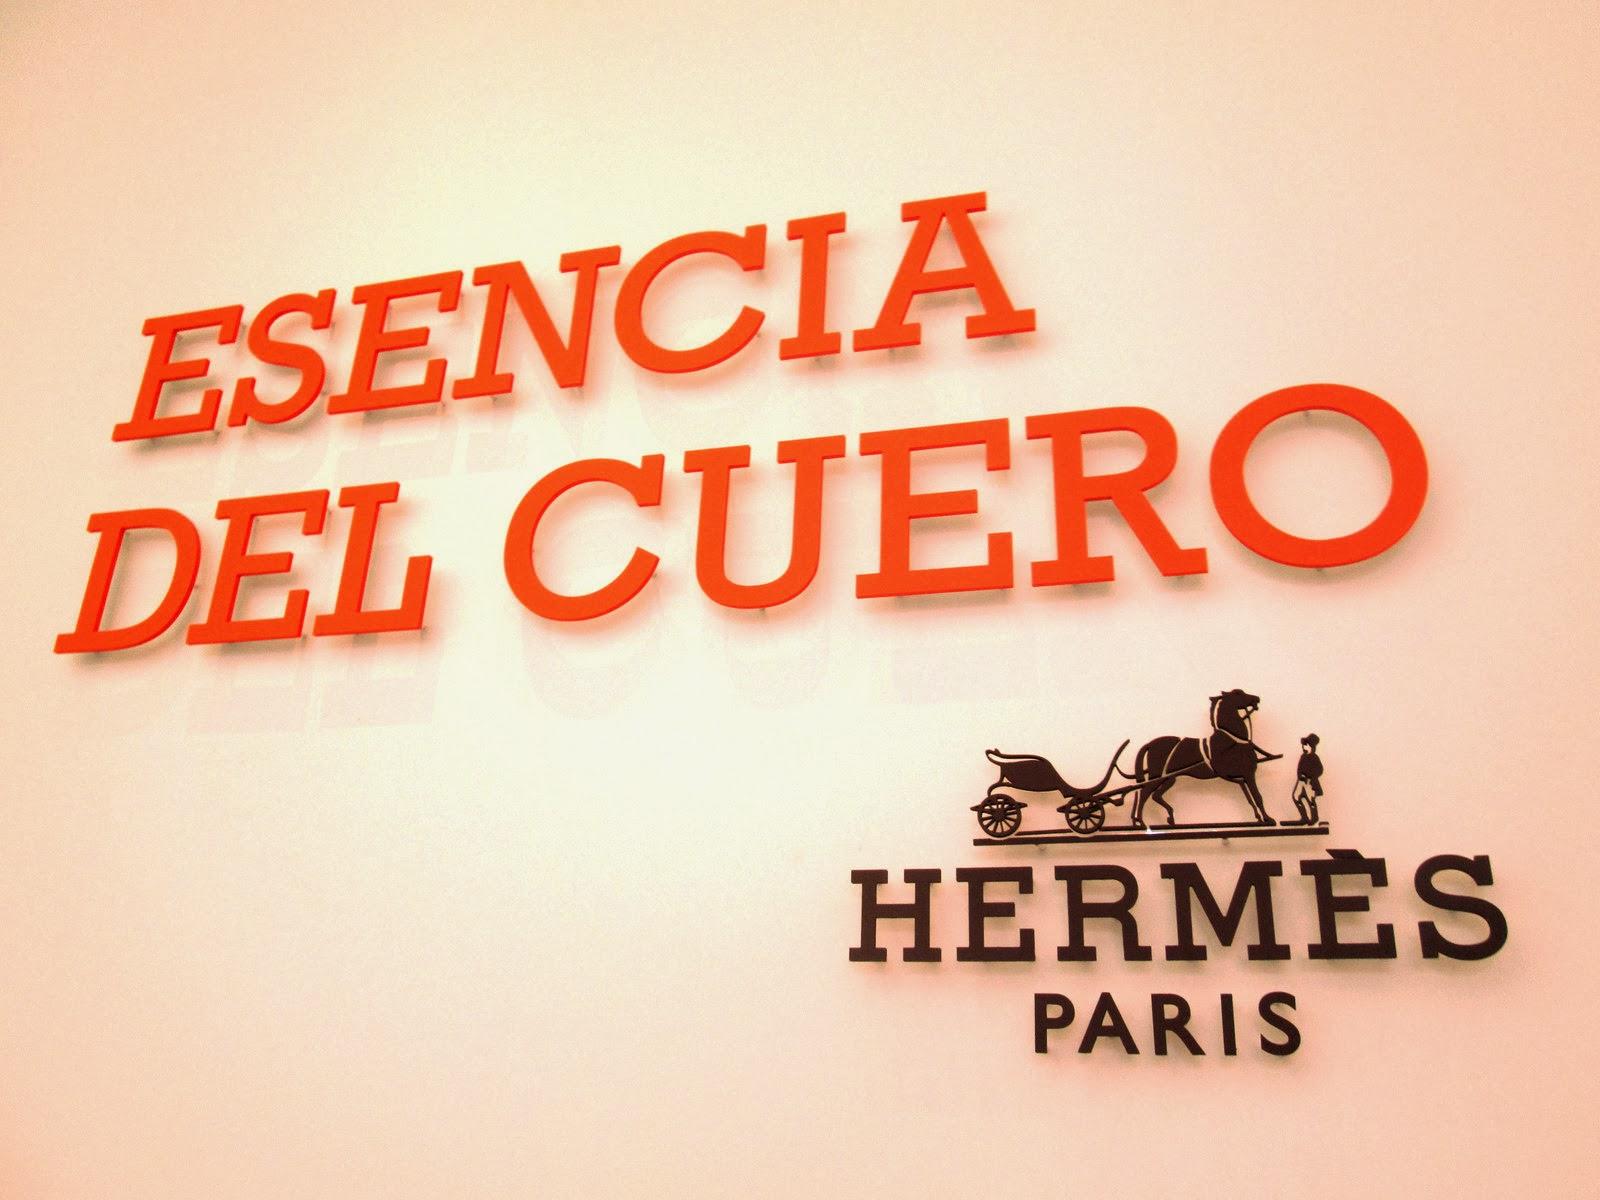 'Esencia del Cuero' by Hermès